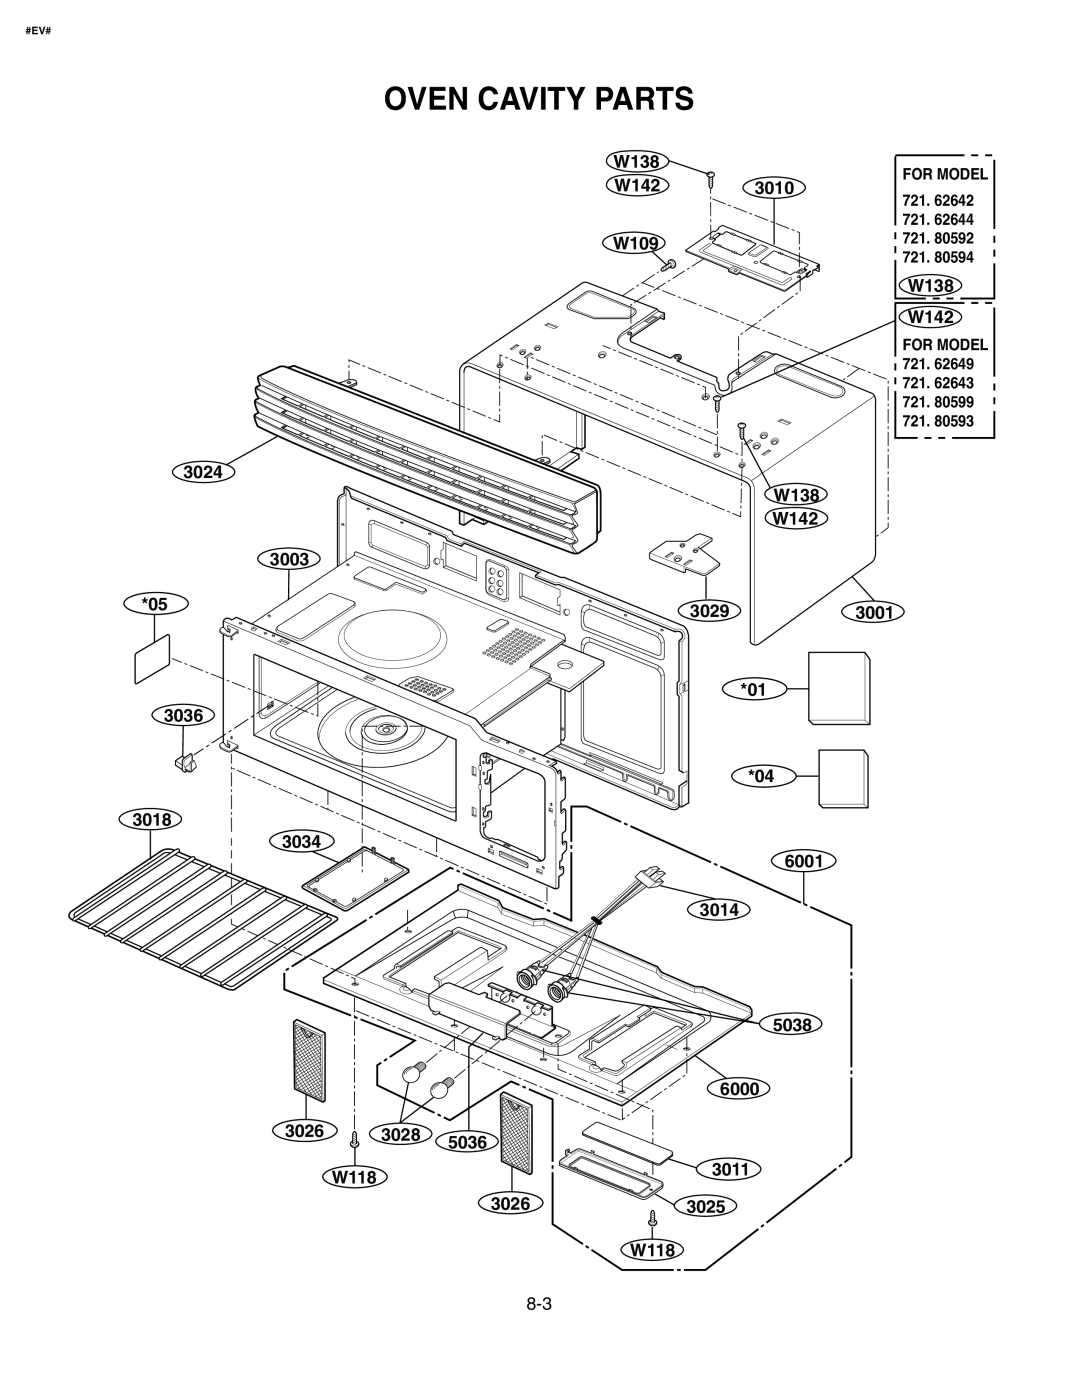 Kenmore 721.626444 manual Oven Cavity Parts, W138 W142 W109, 3024 3003 05, W138 W142 30293001 01, 3025 W118, 3026, #Ev# 